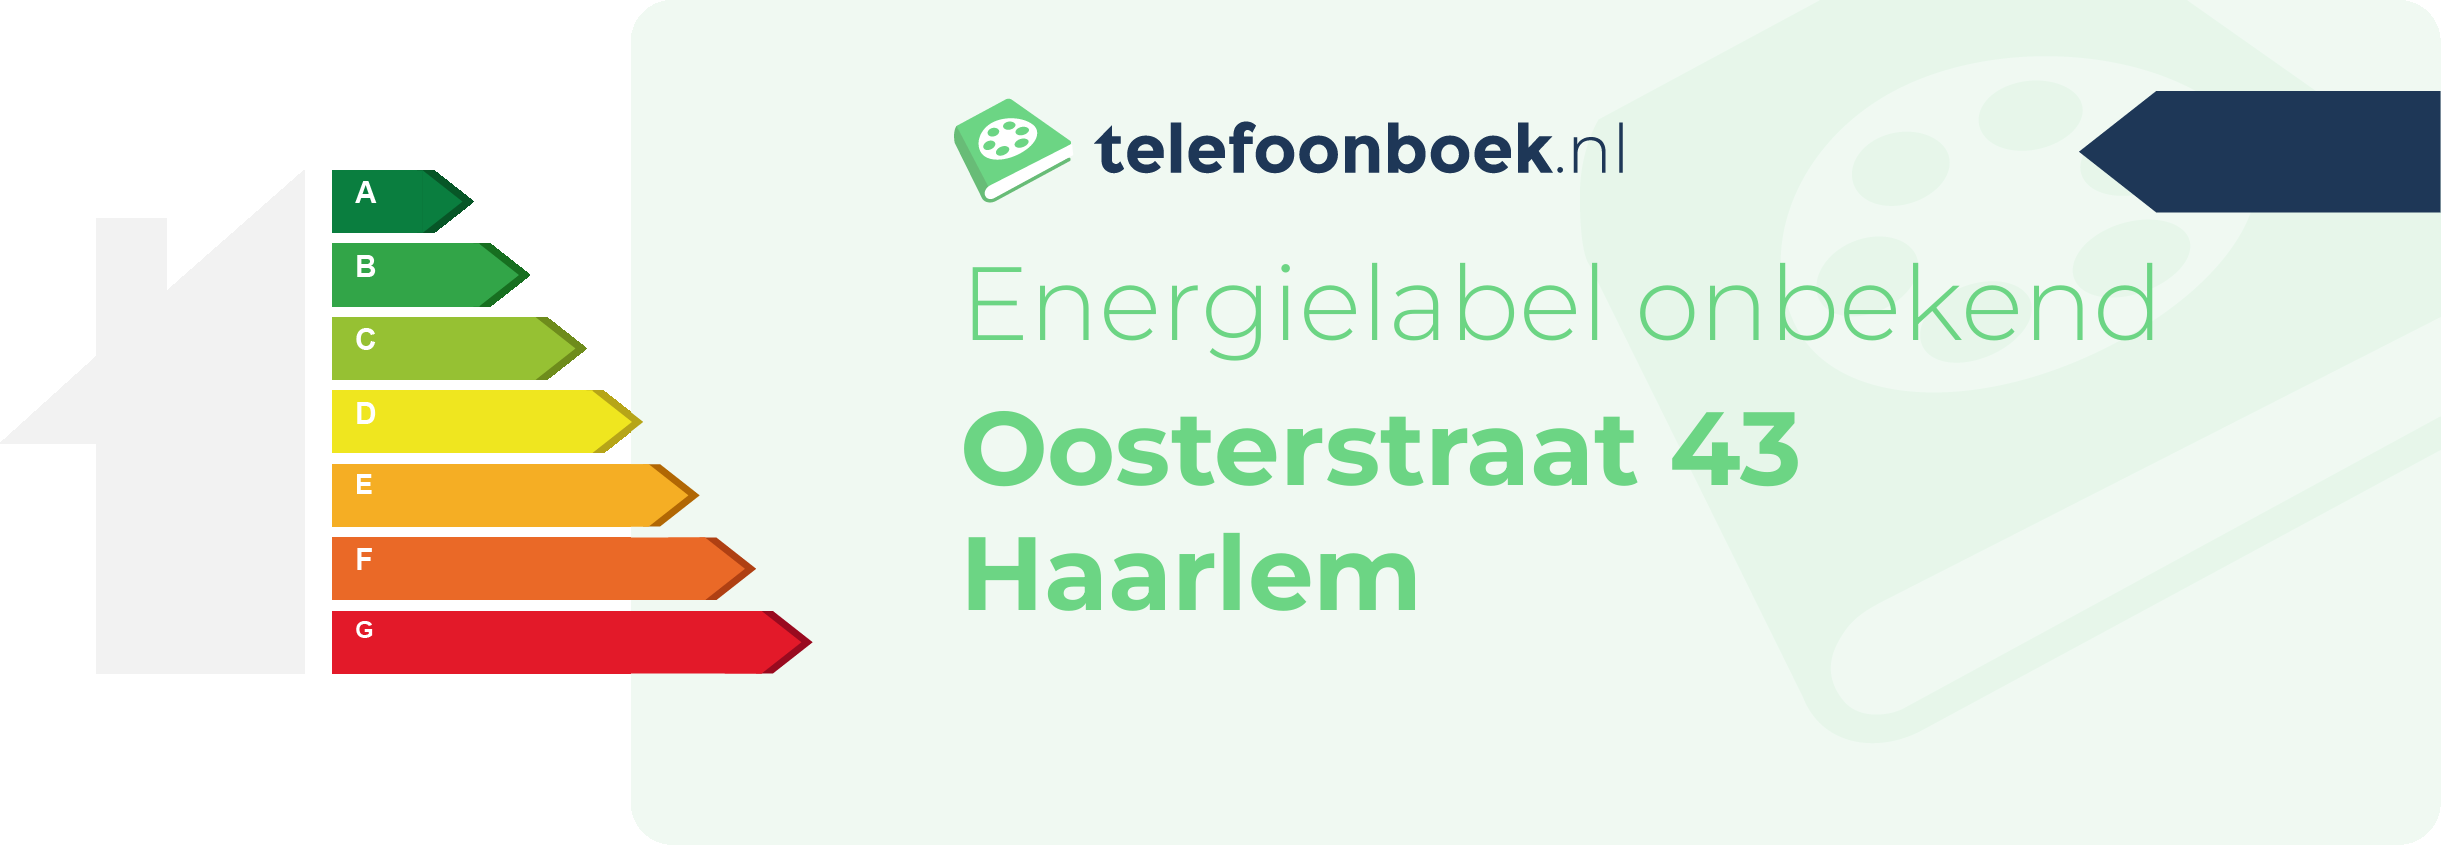 Energielabel Oosterstraat 43 Haarlem